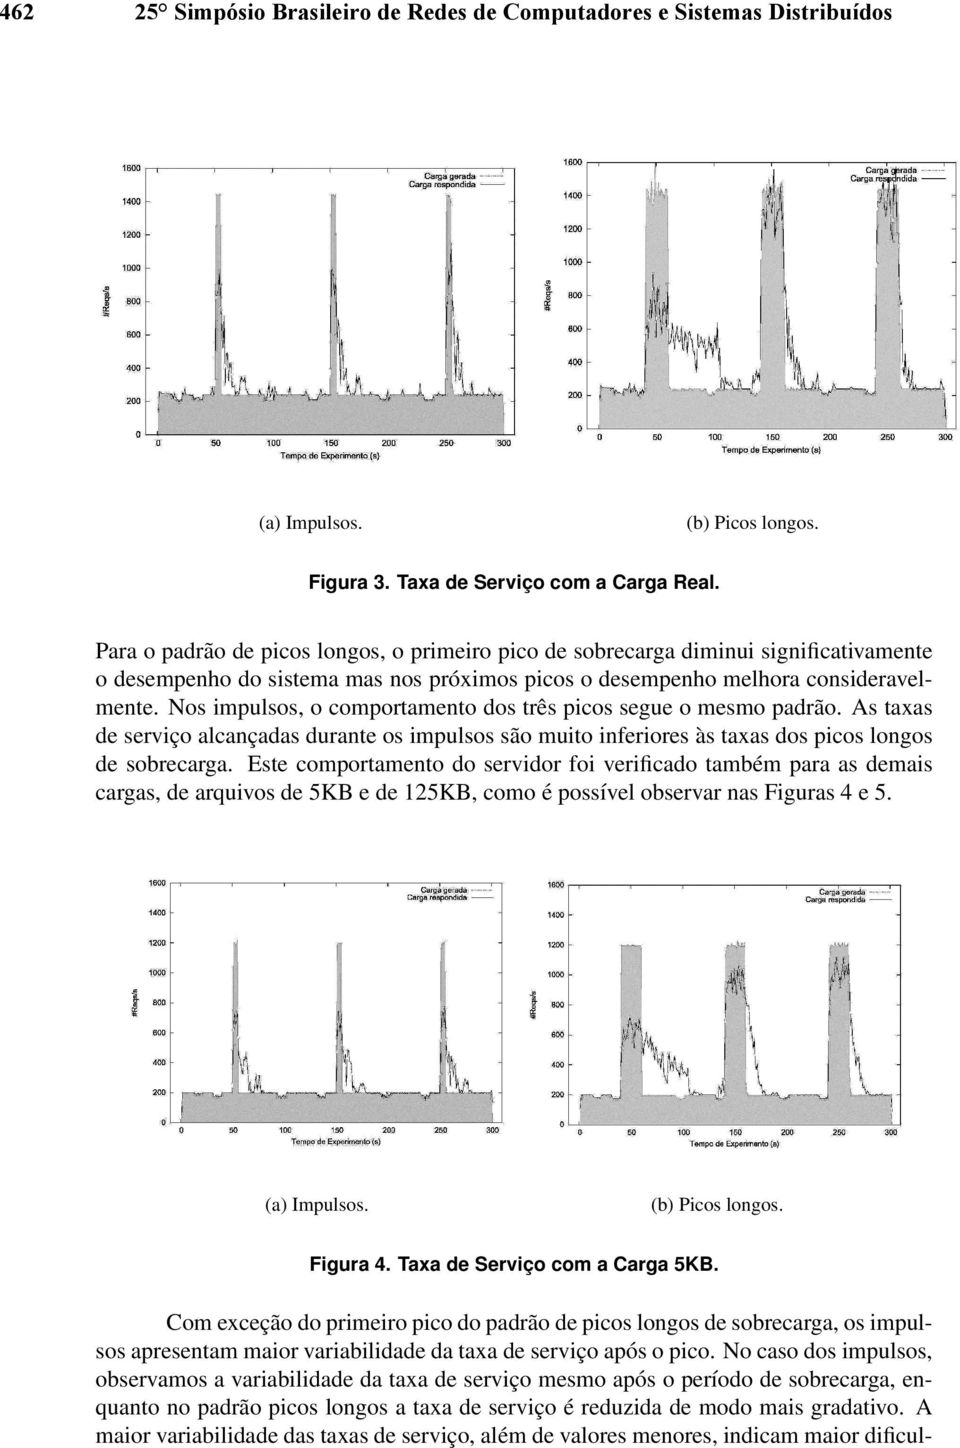 Nos impulsos, o comportamento dos três picos segue o mesmo padrão. As taxas de serviço alcançadas durante os impulsos são muito inferiores às taxas dos picos longos de sobrecarga.